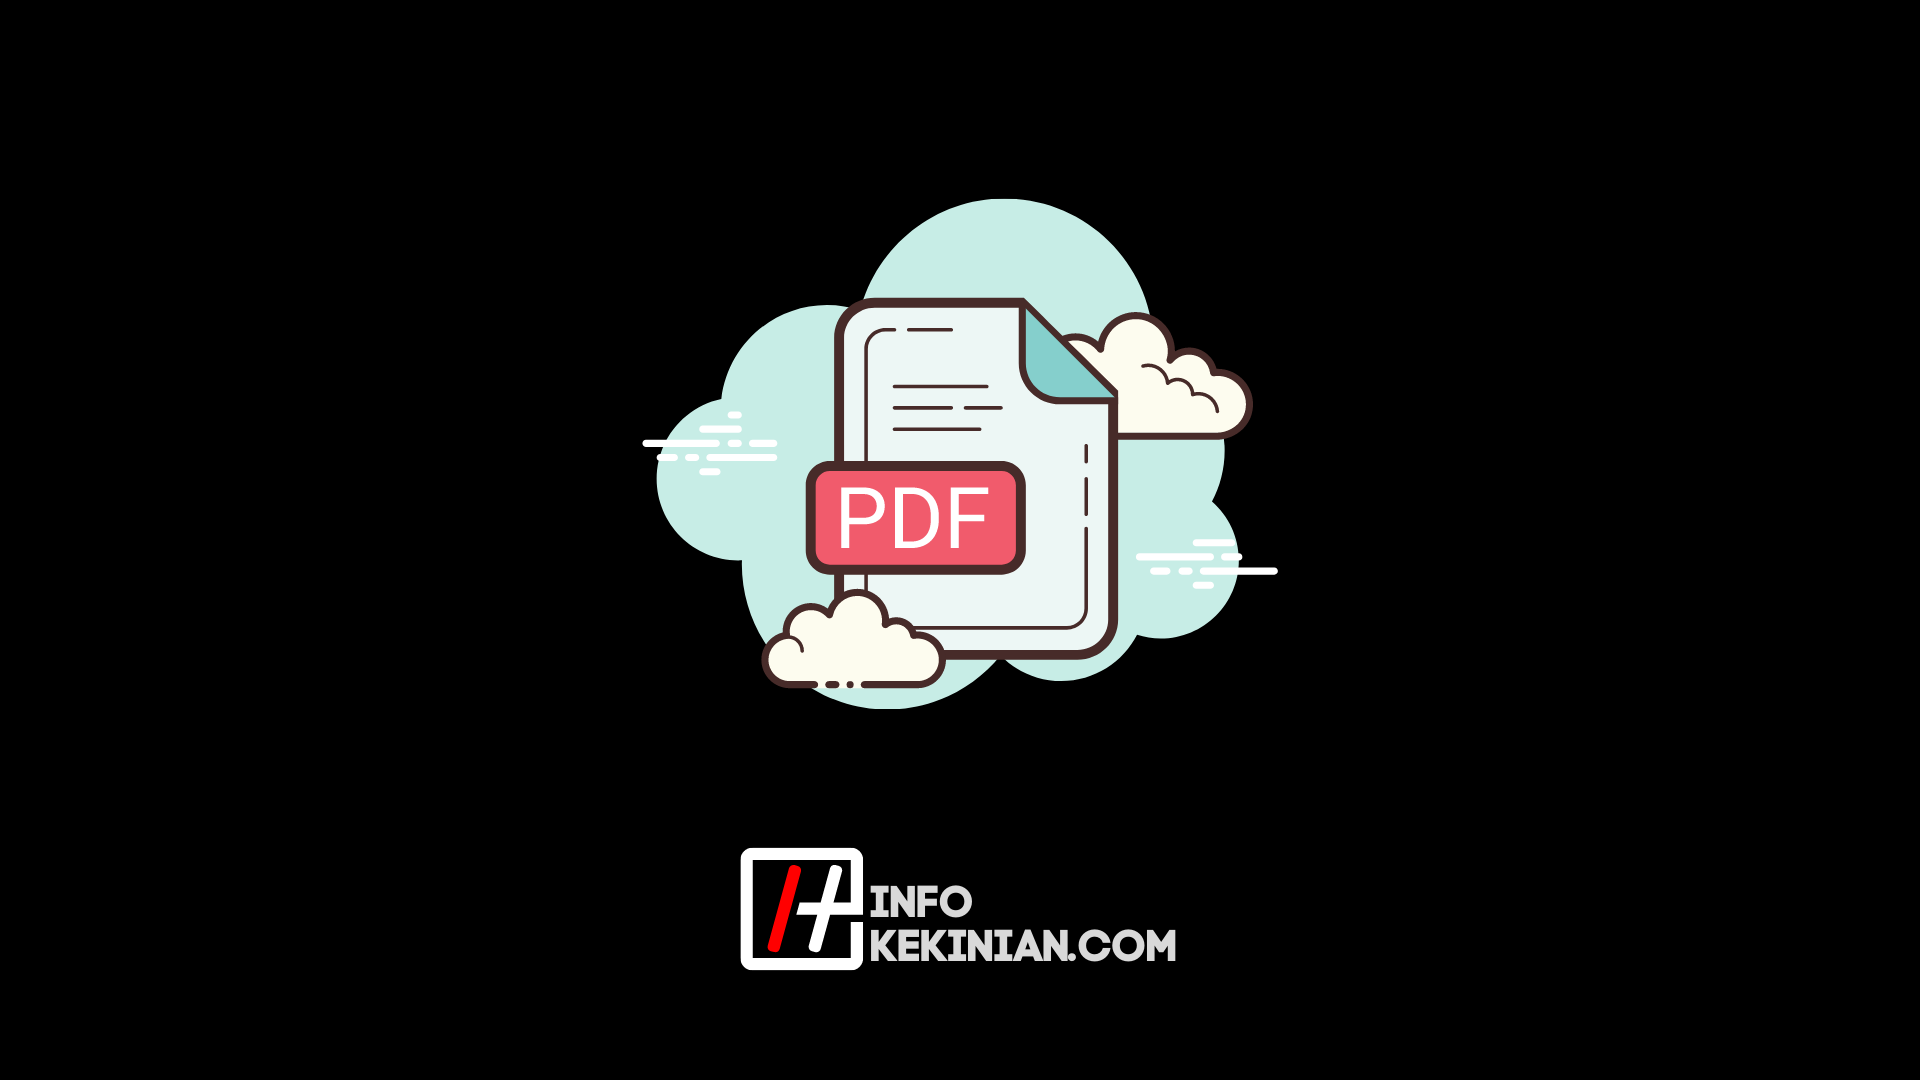 Cómo combinar archivos PDF a través de HP y una computadora portátil